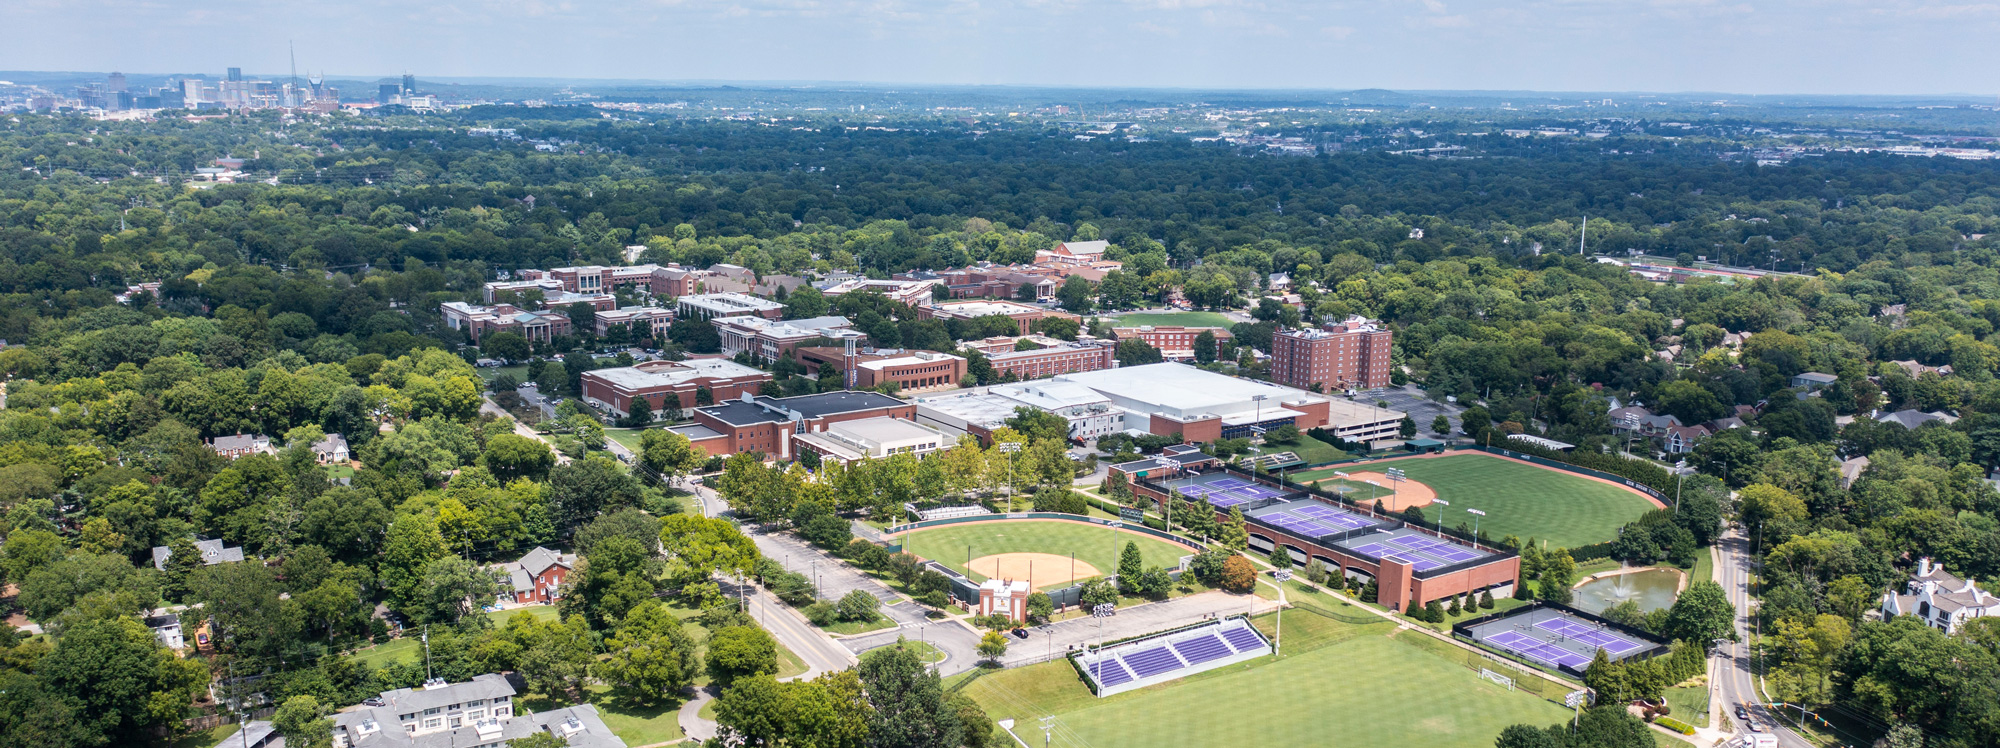 Campus aerial image